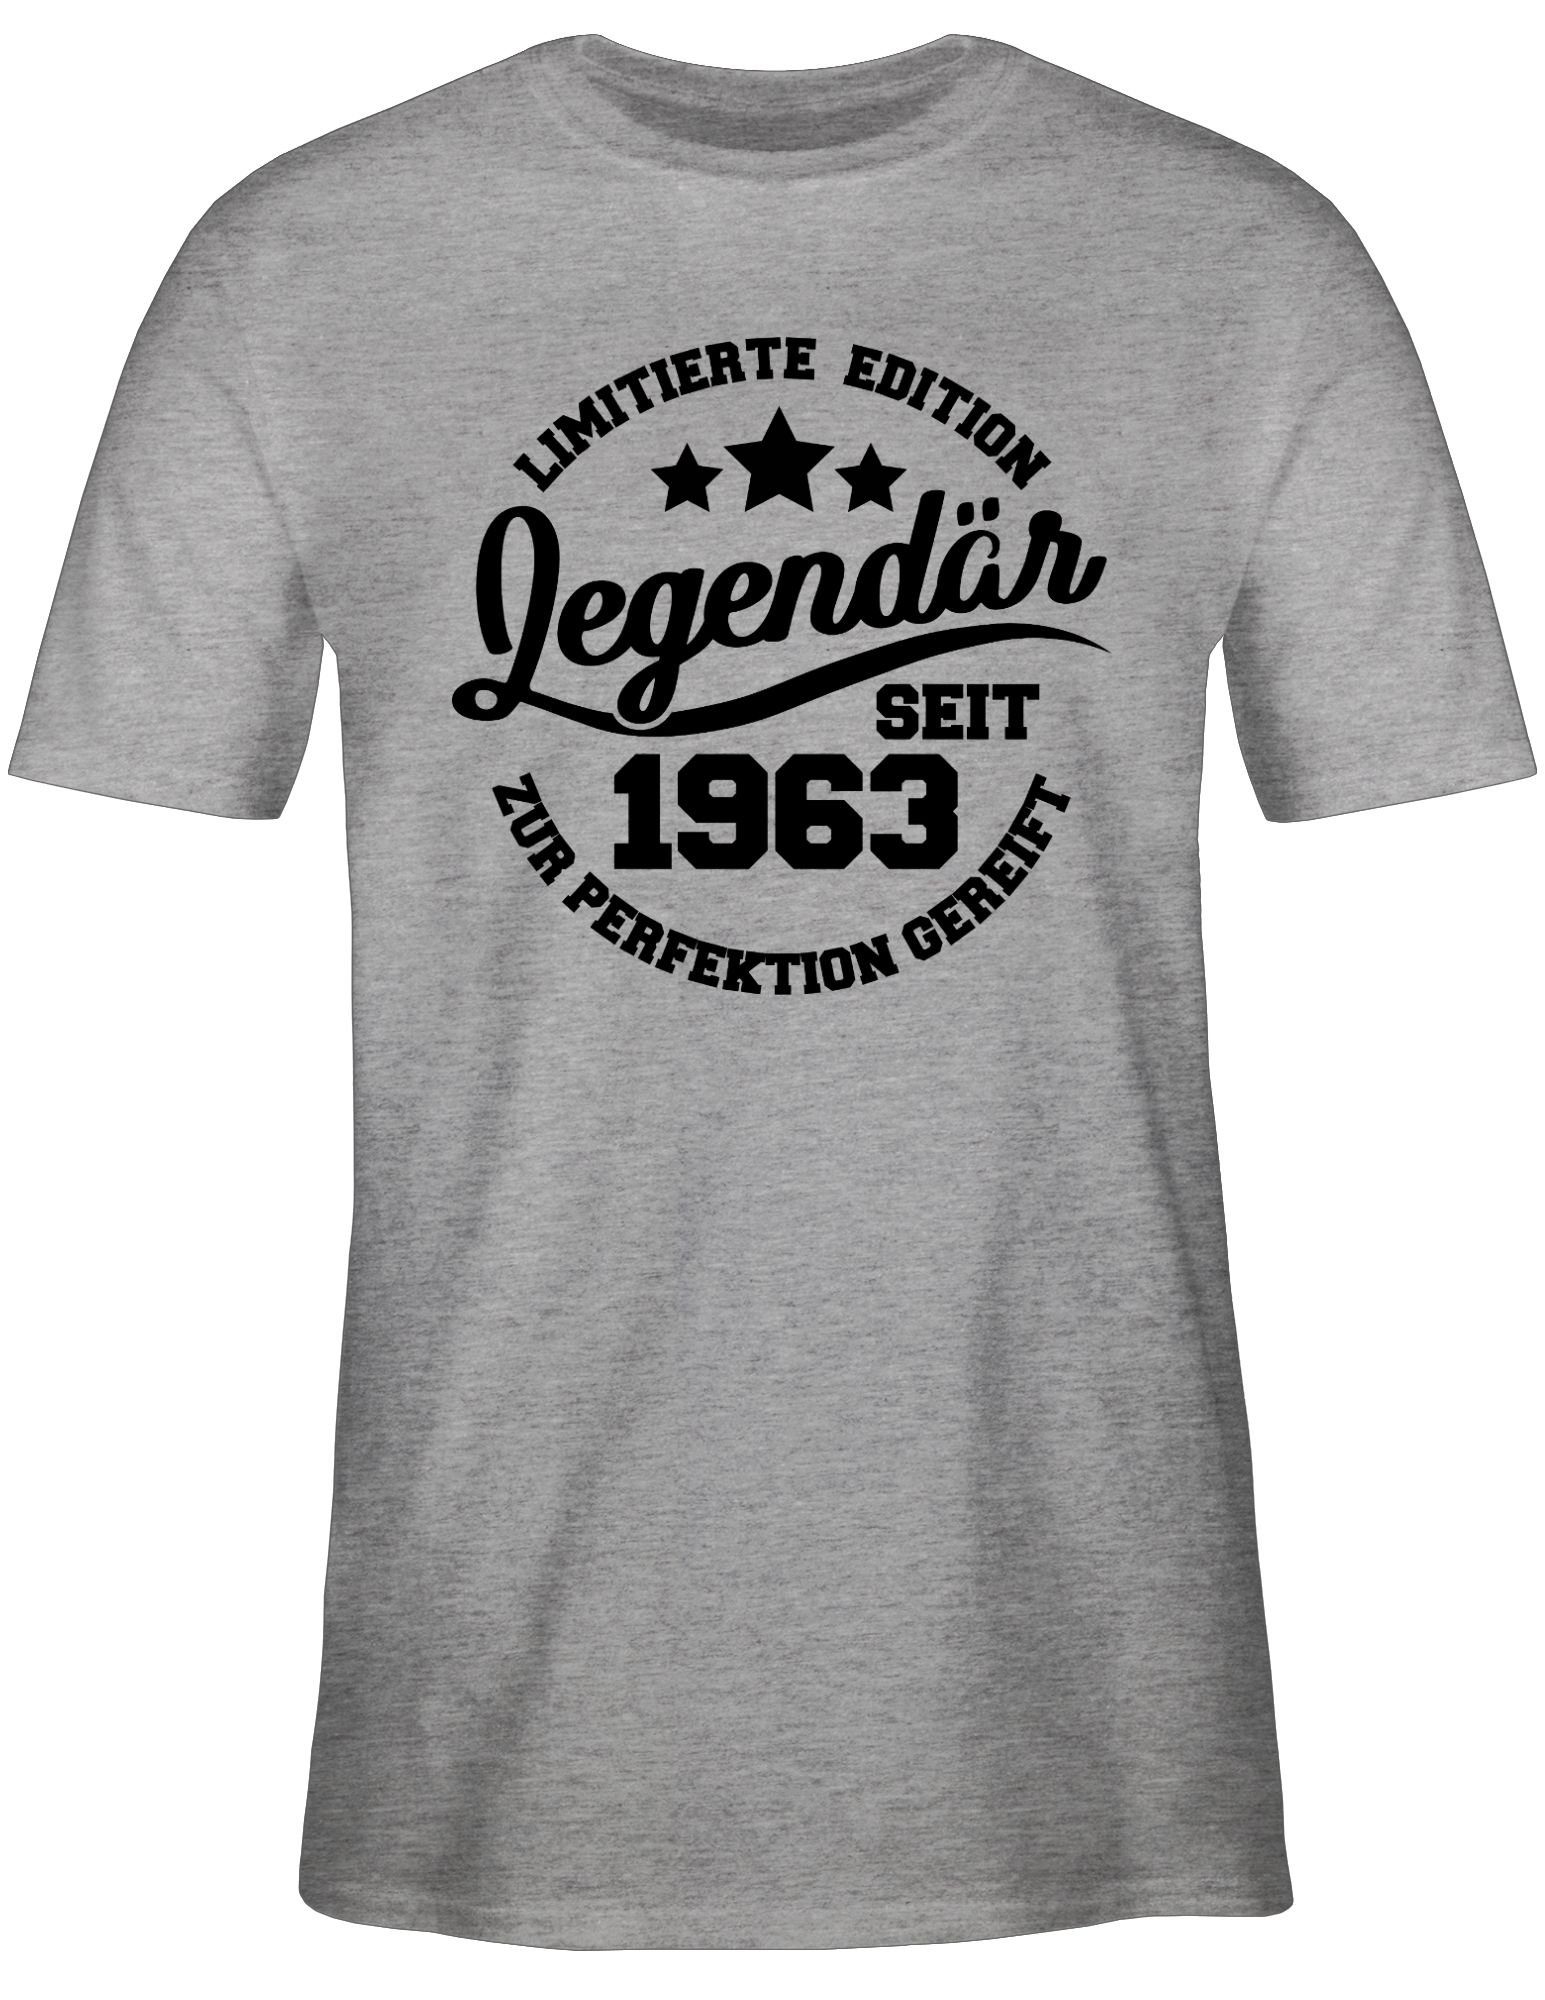 Shirtracer T-Shirt 1963 60. Grau Geburtstag Legendär seit 2 meliert - schwarz